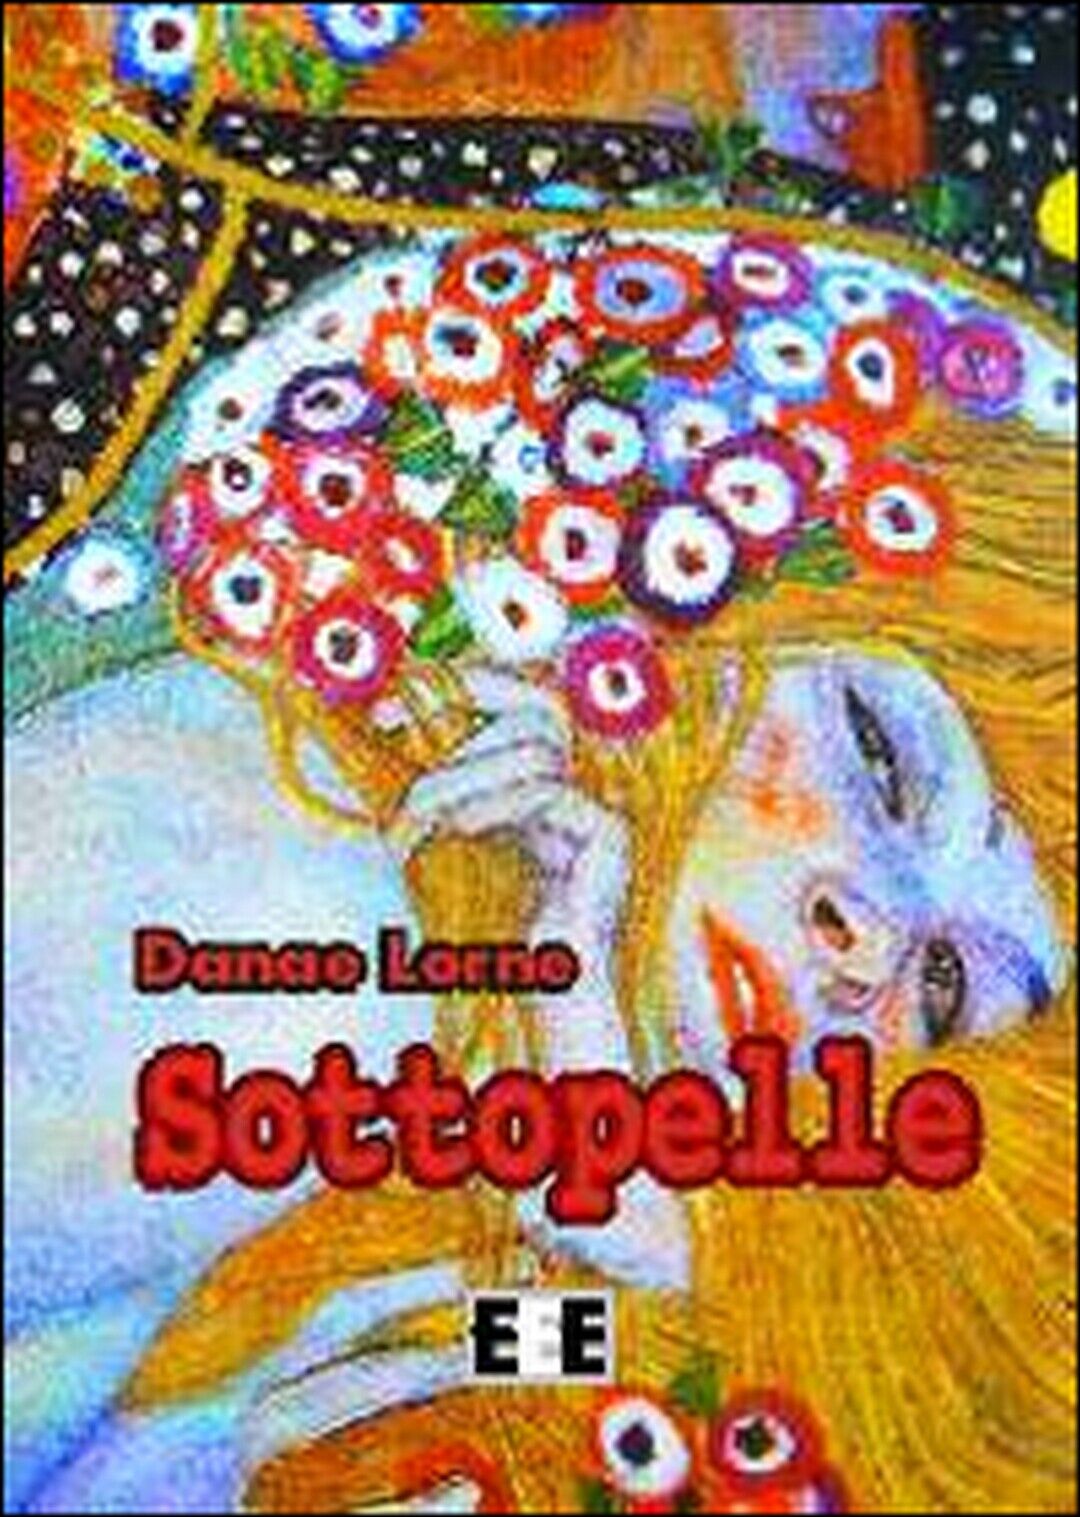 Sottopelle  di Lorne Danae,  2014,  Eee-edizioni Esordienti